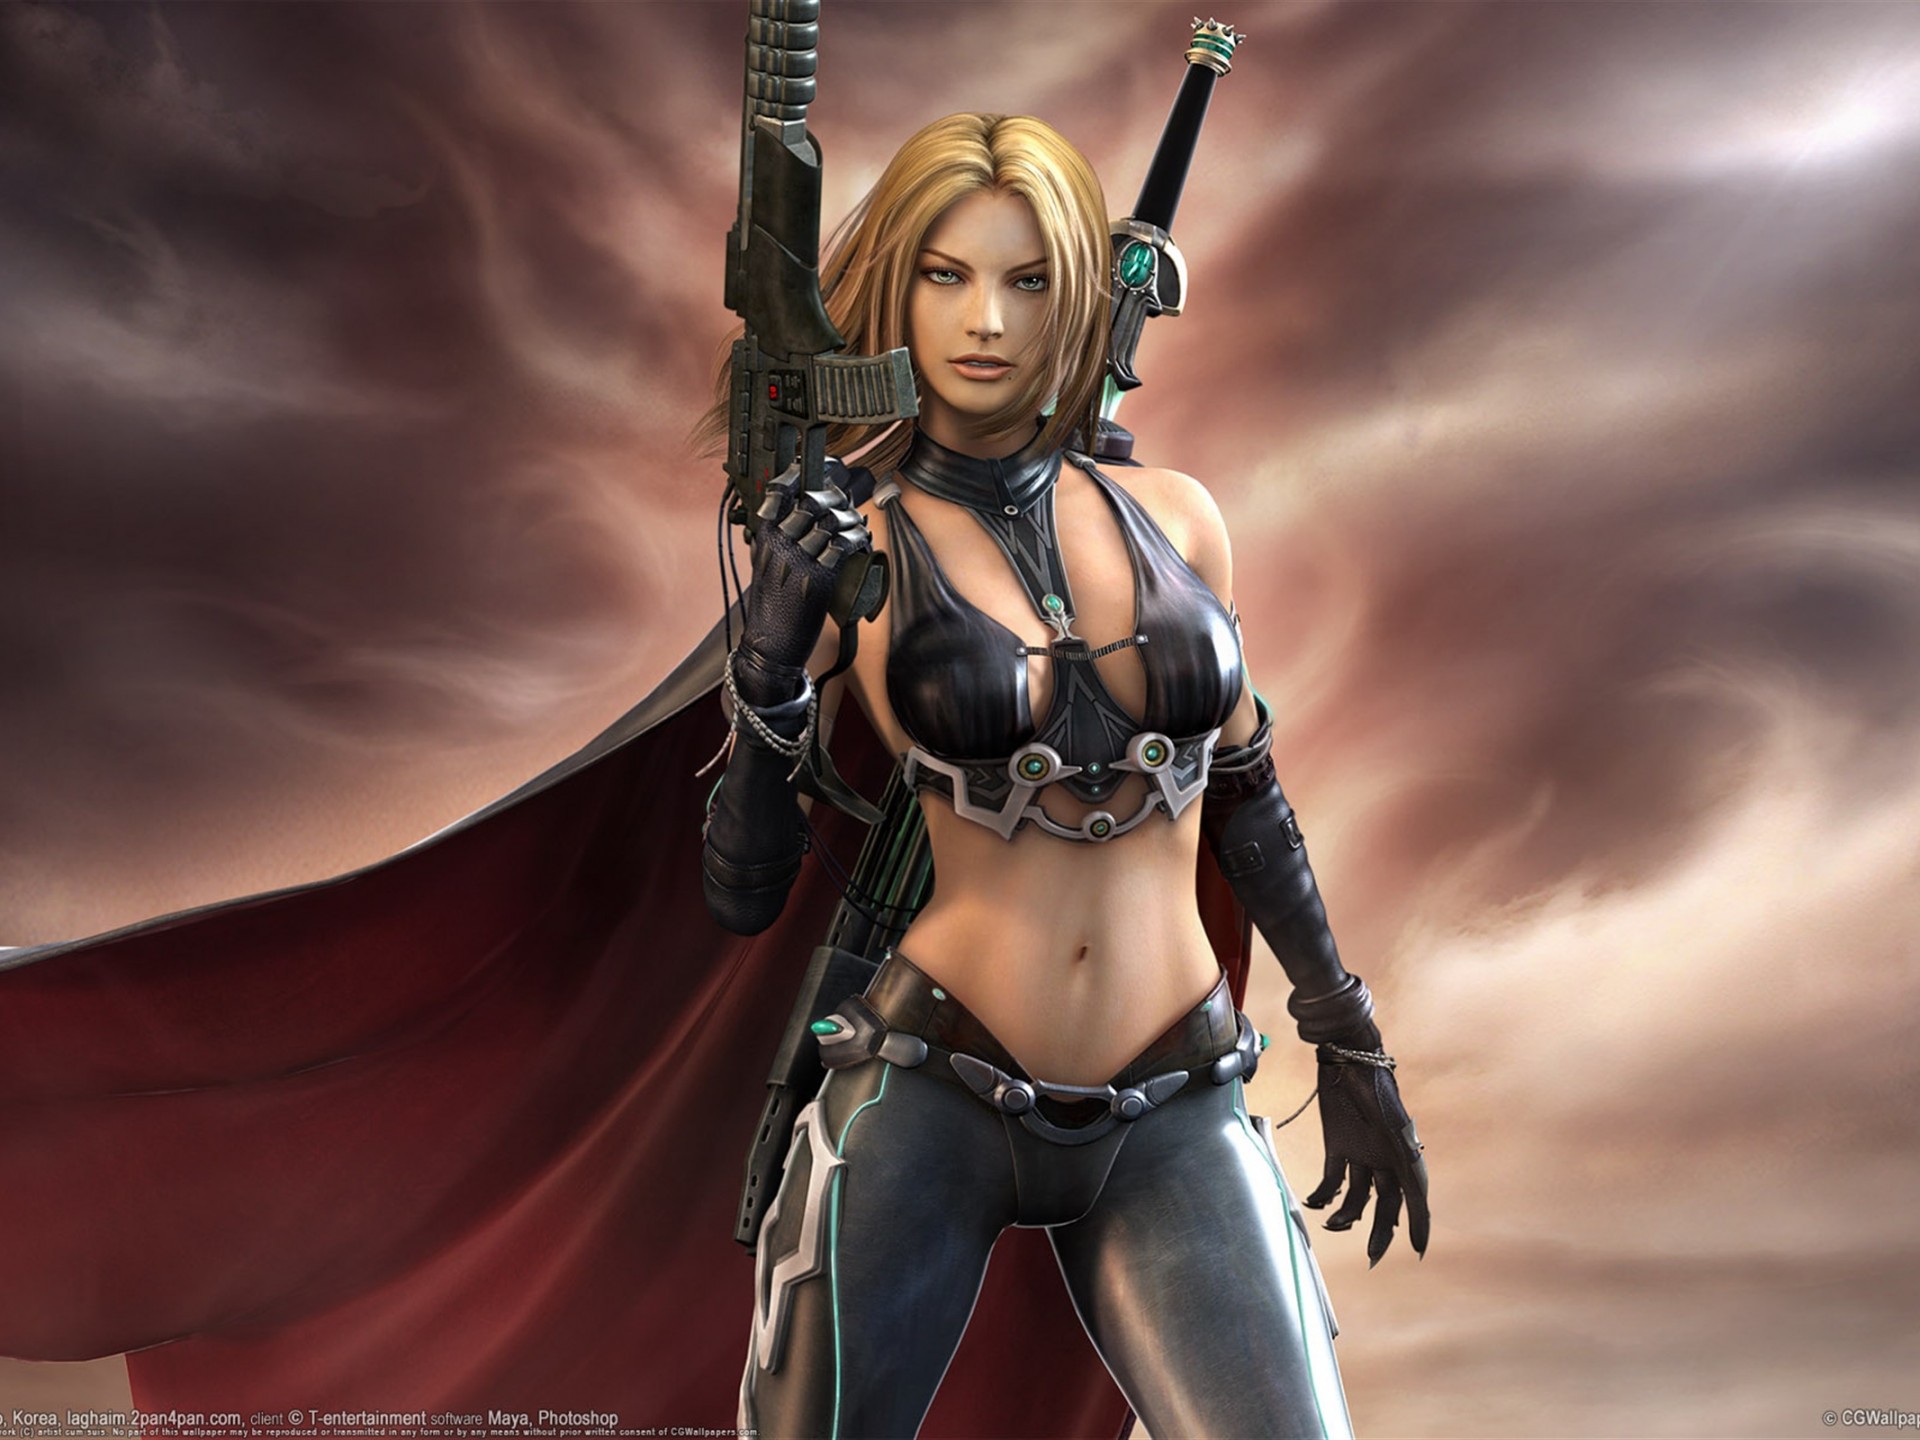 papel pintado caliente de la muchacha de la fantasía,cg artwork,personaje de ficción,figura de acción,videojuego de rol multijugador masivo en línea,captura de pantalla